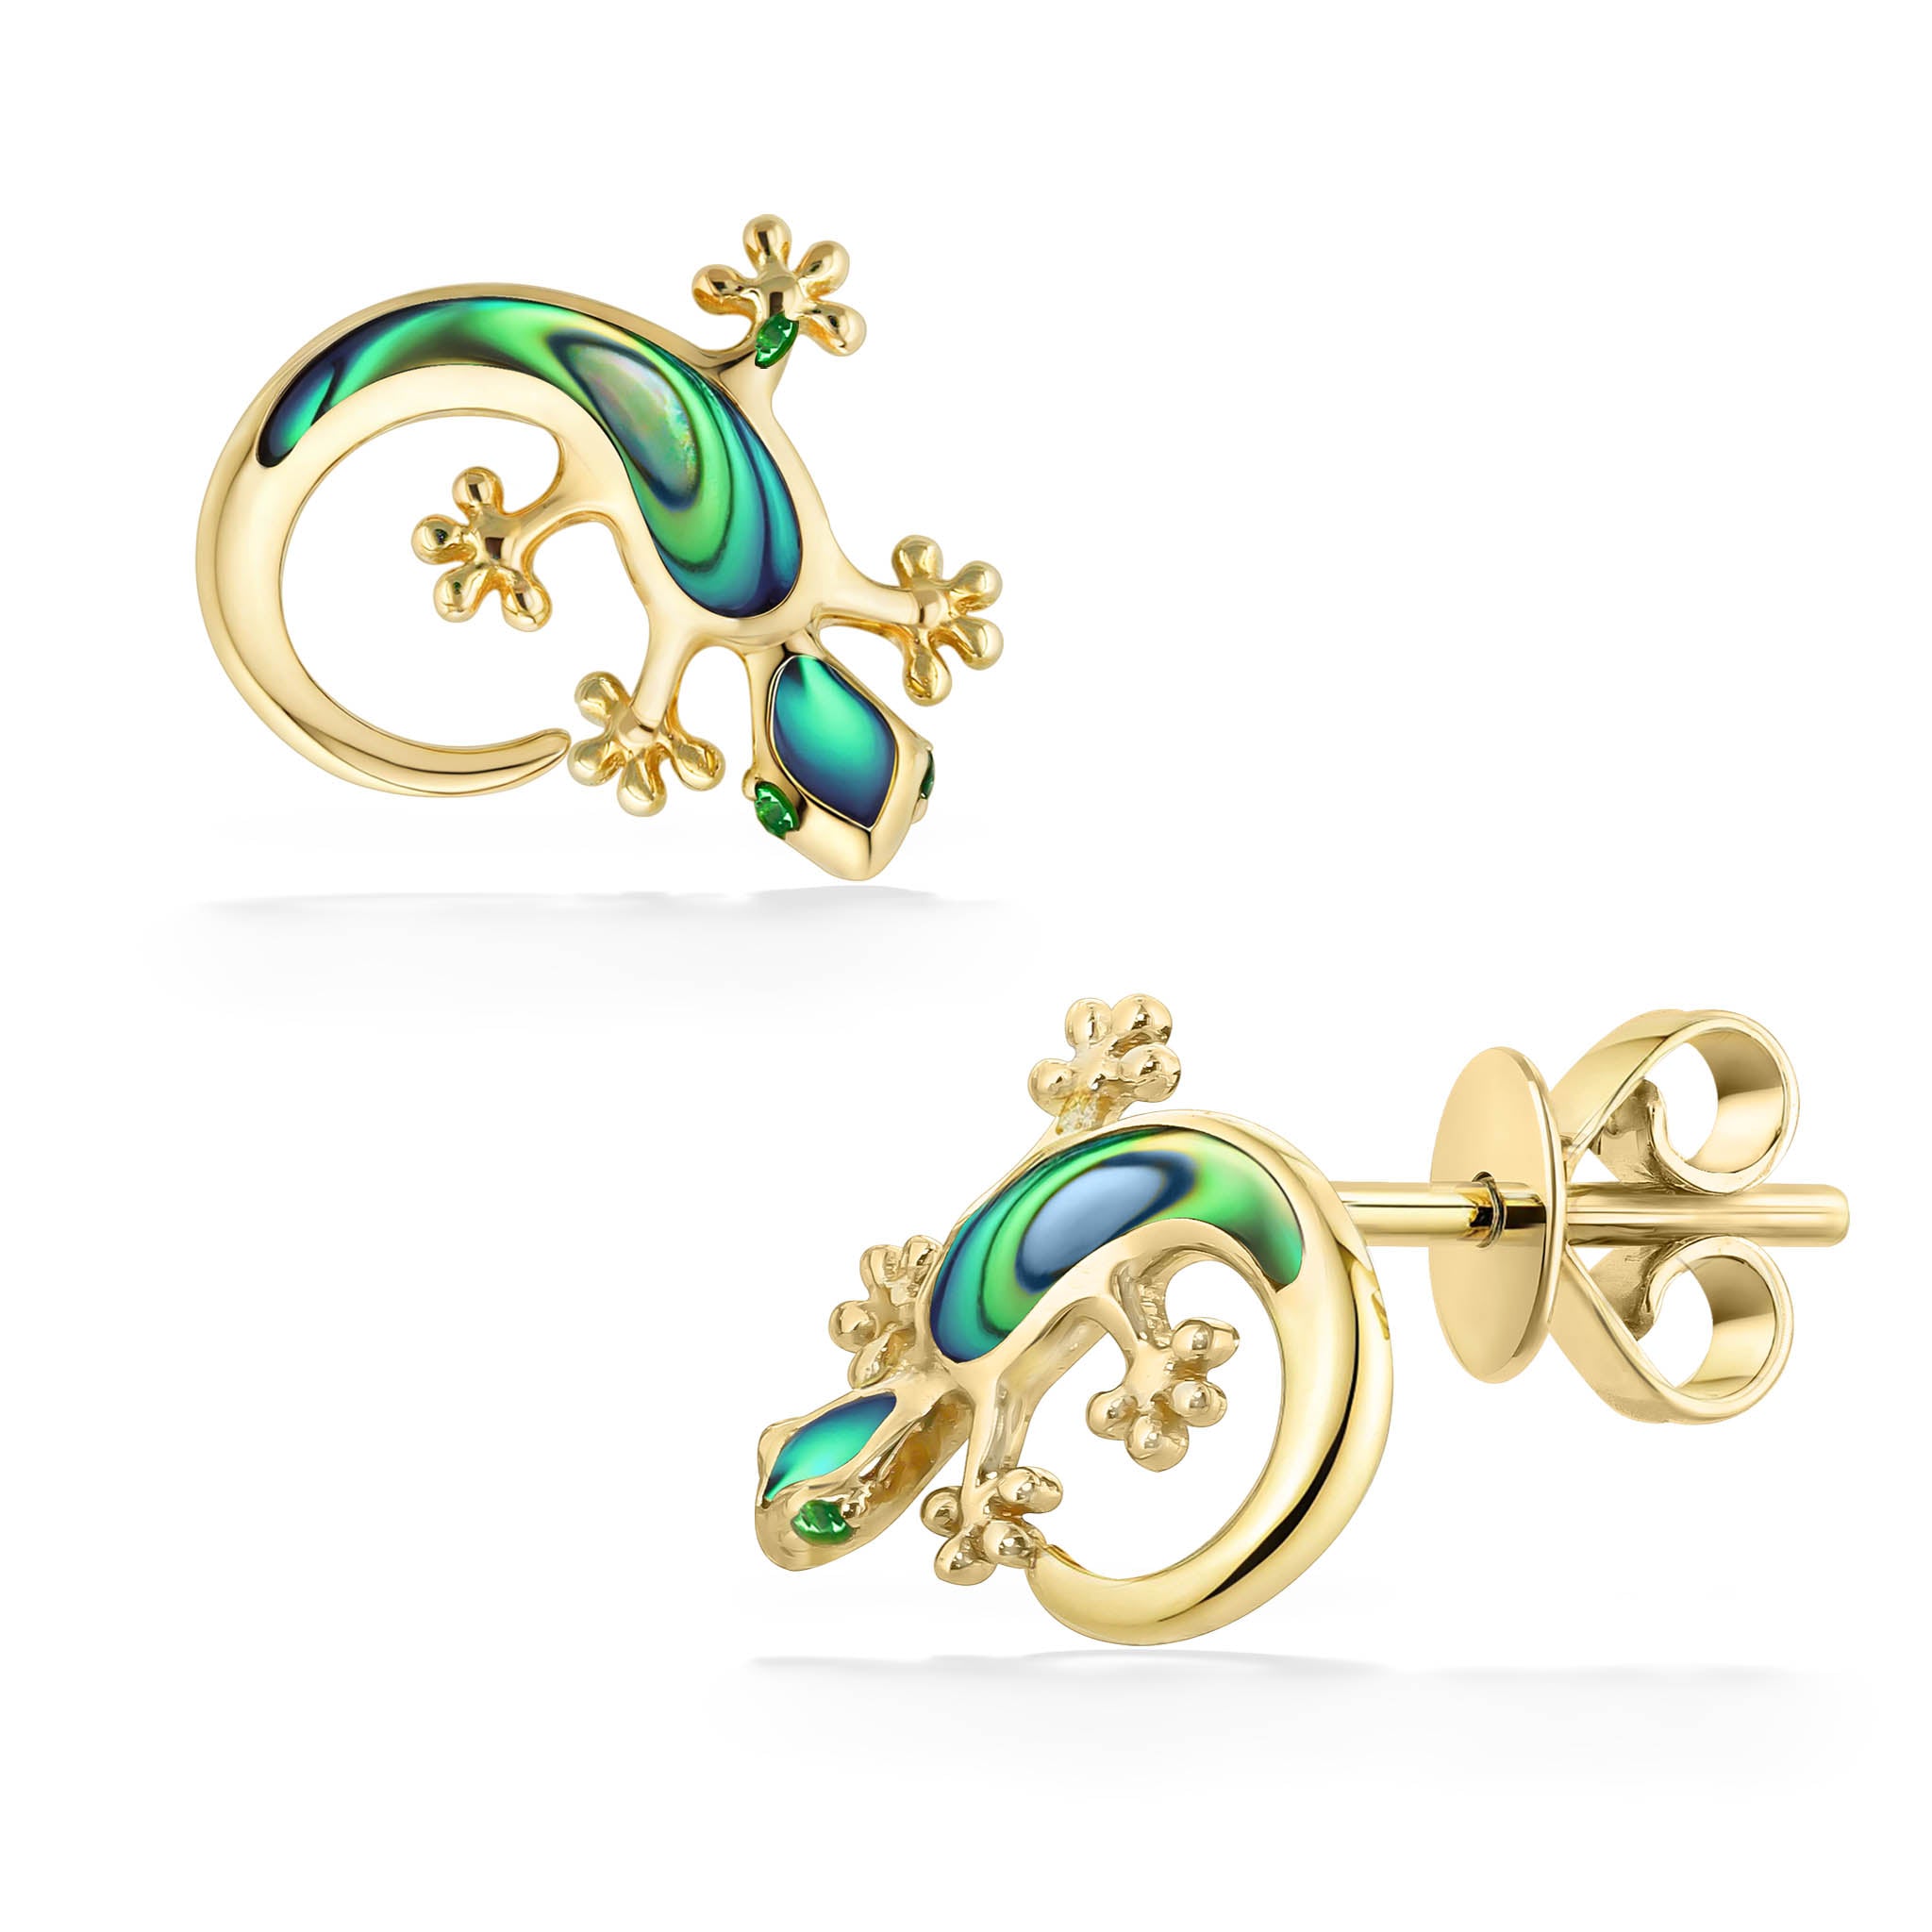 Unique Jewellery Design Gold Earrings 2018 For Eid||Latest Jewellery De...